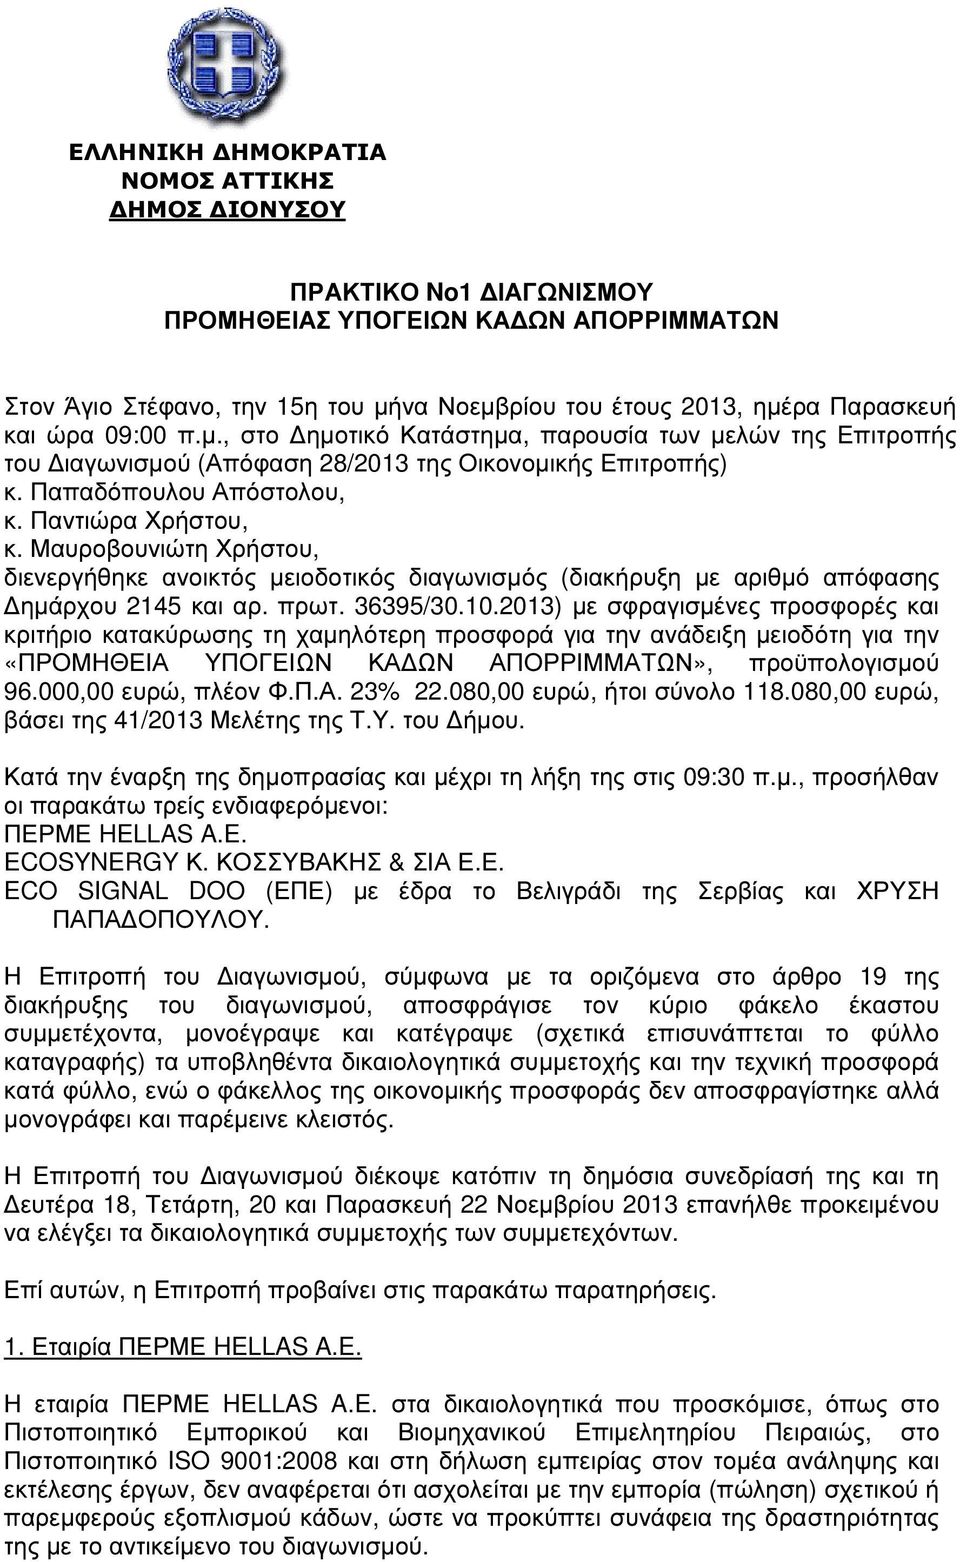 Μαυροβουνιώτη Χρήστου, διενεργήθηκε ανοικτός µειοδοτικός διαγωνισµός (διακήρυξη µε αριθµό απόφασης ηµάρχου 2145 και αρ. πρωτ. 36395/30.10.